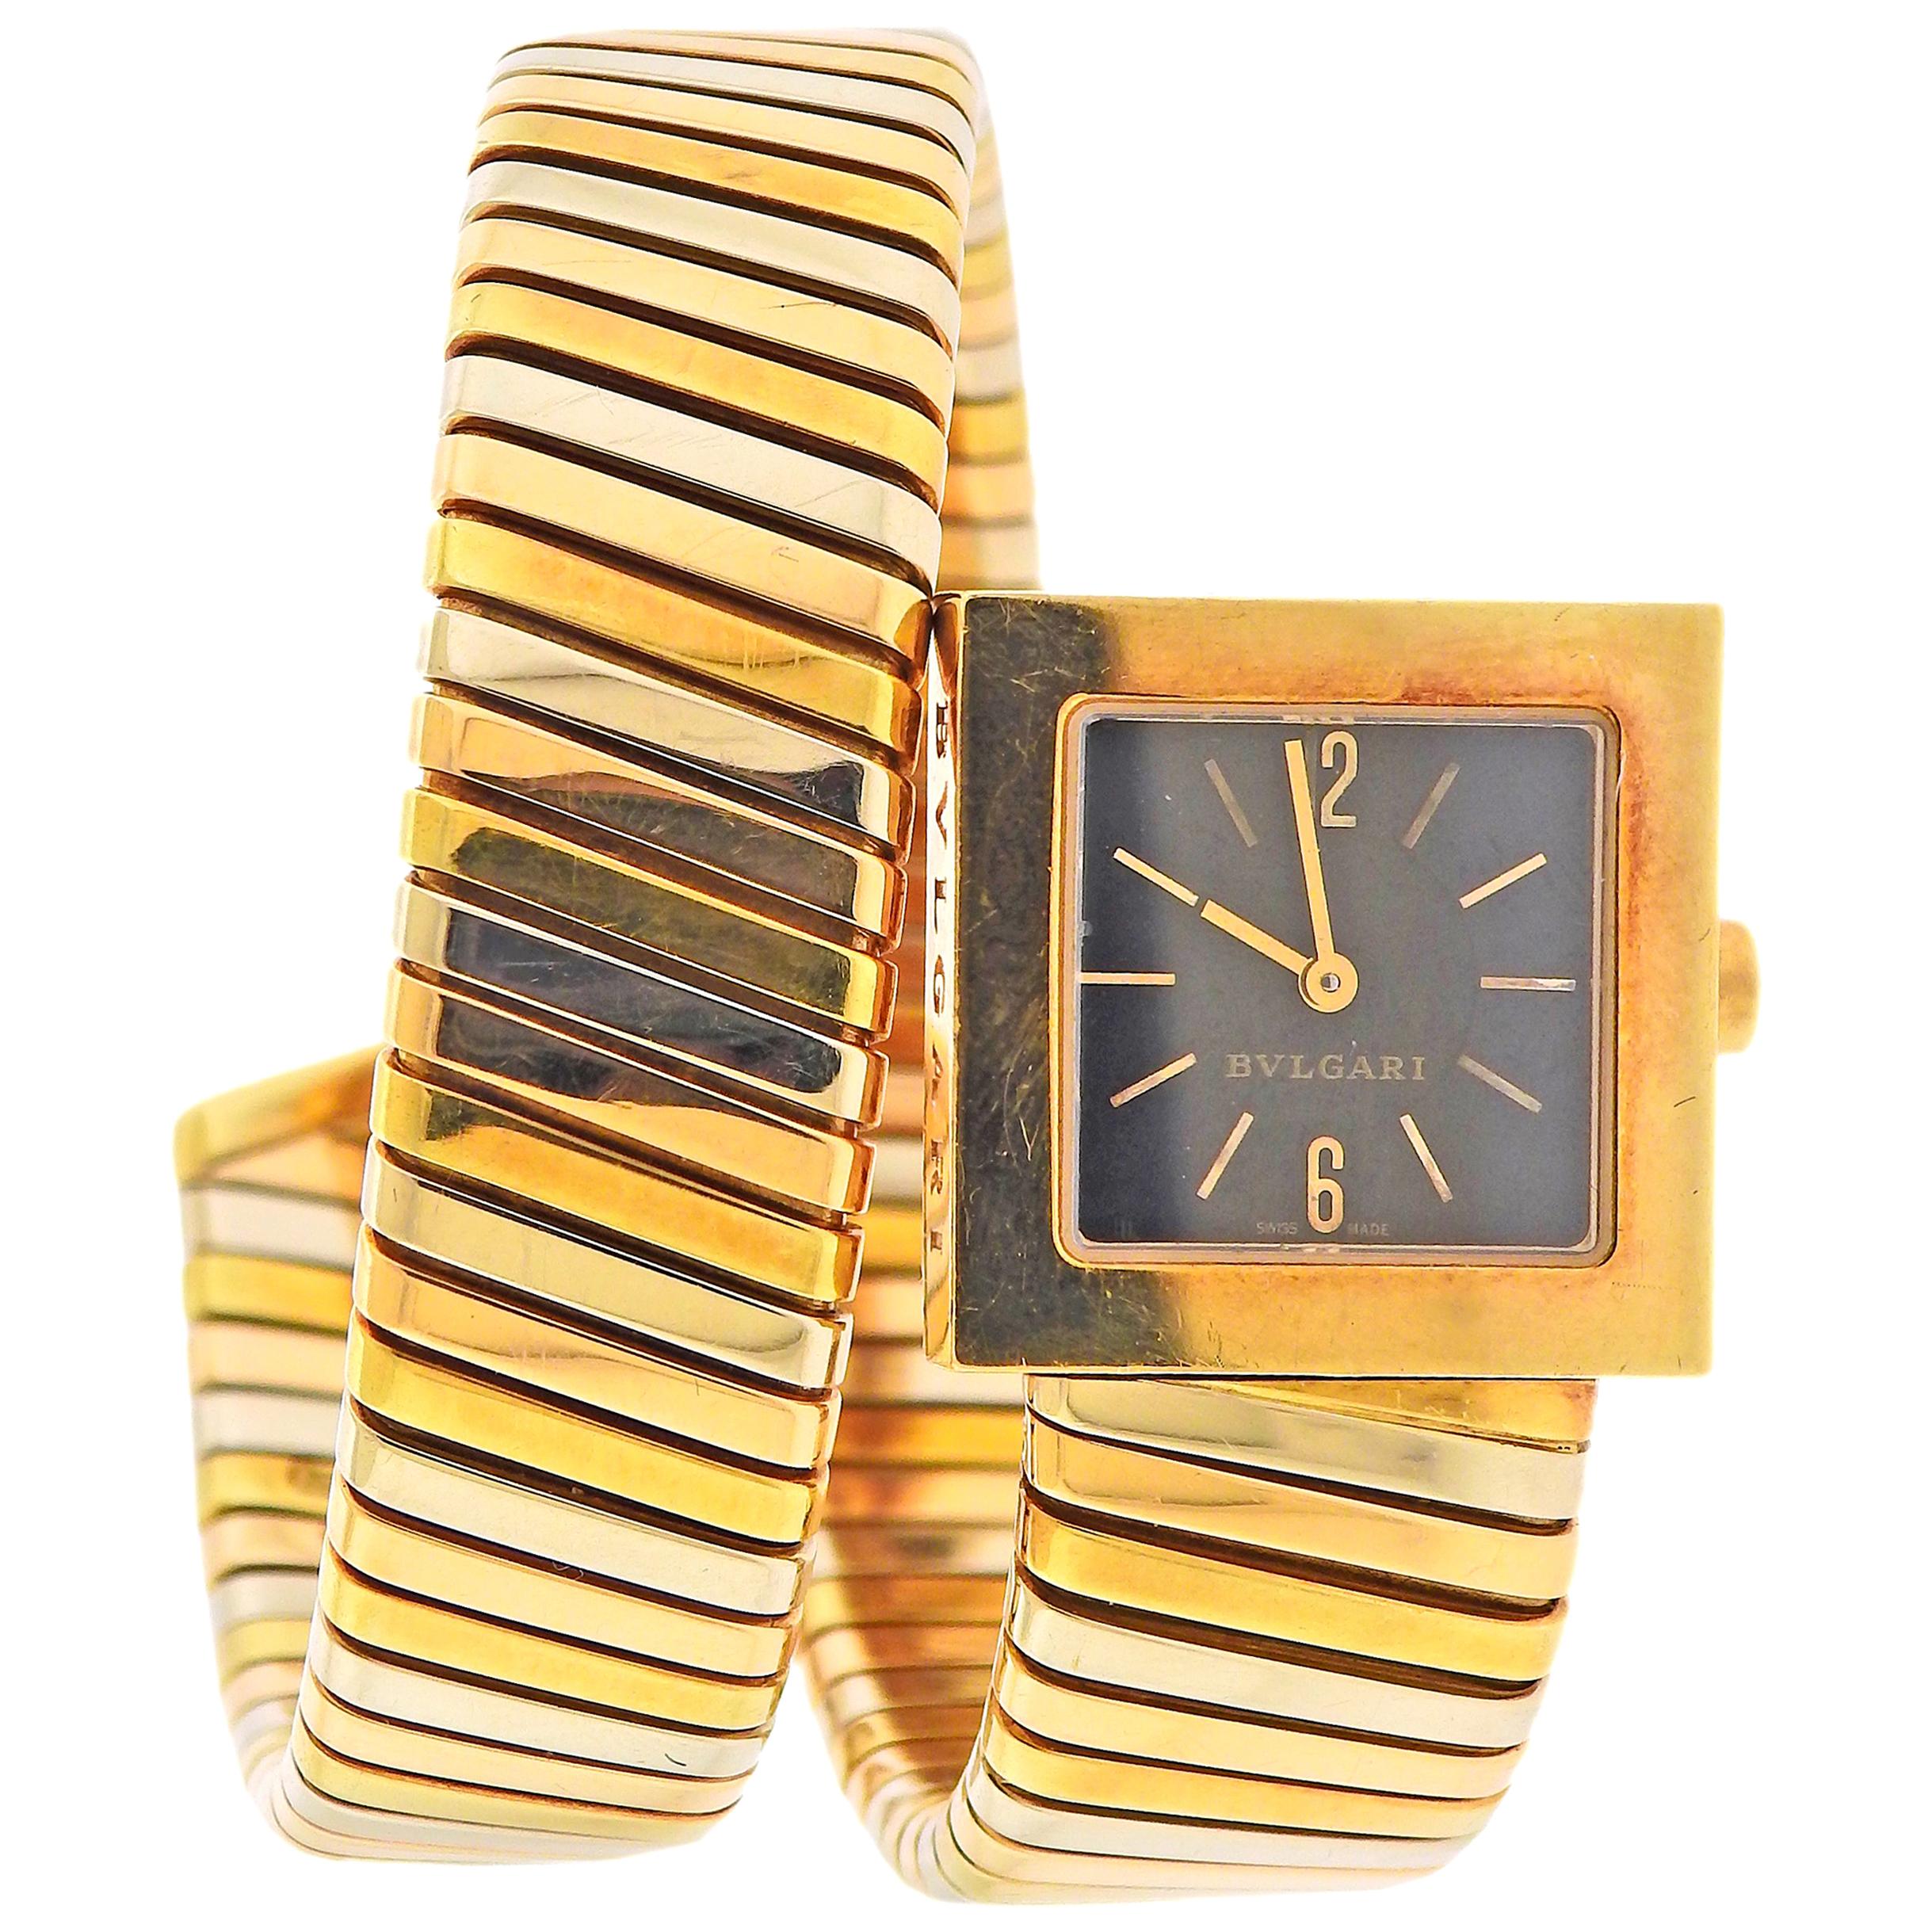 Bulgari Tubogas Tri Color Gold Wrap Bracelet Watch SQ 22 1T